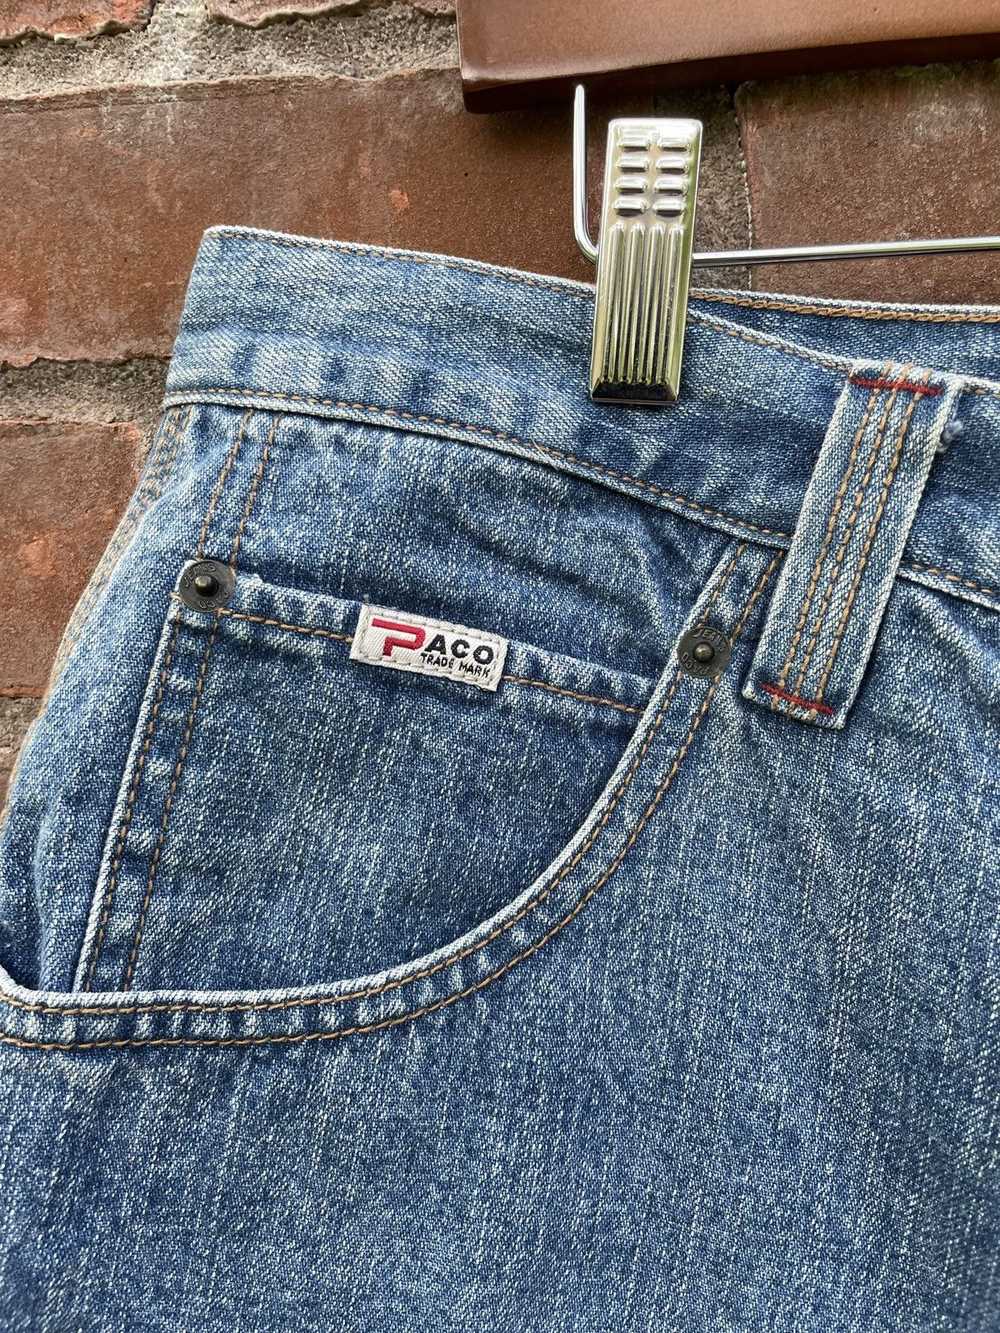 Streetwear × Vintage Y2K Paco Jeans Shorts - image 4